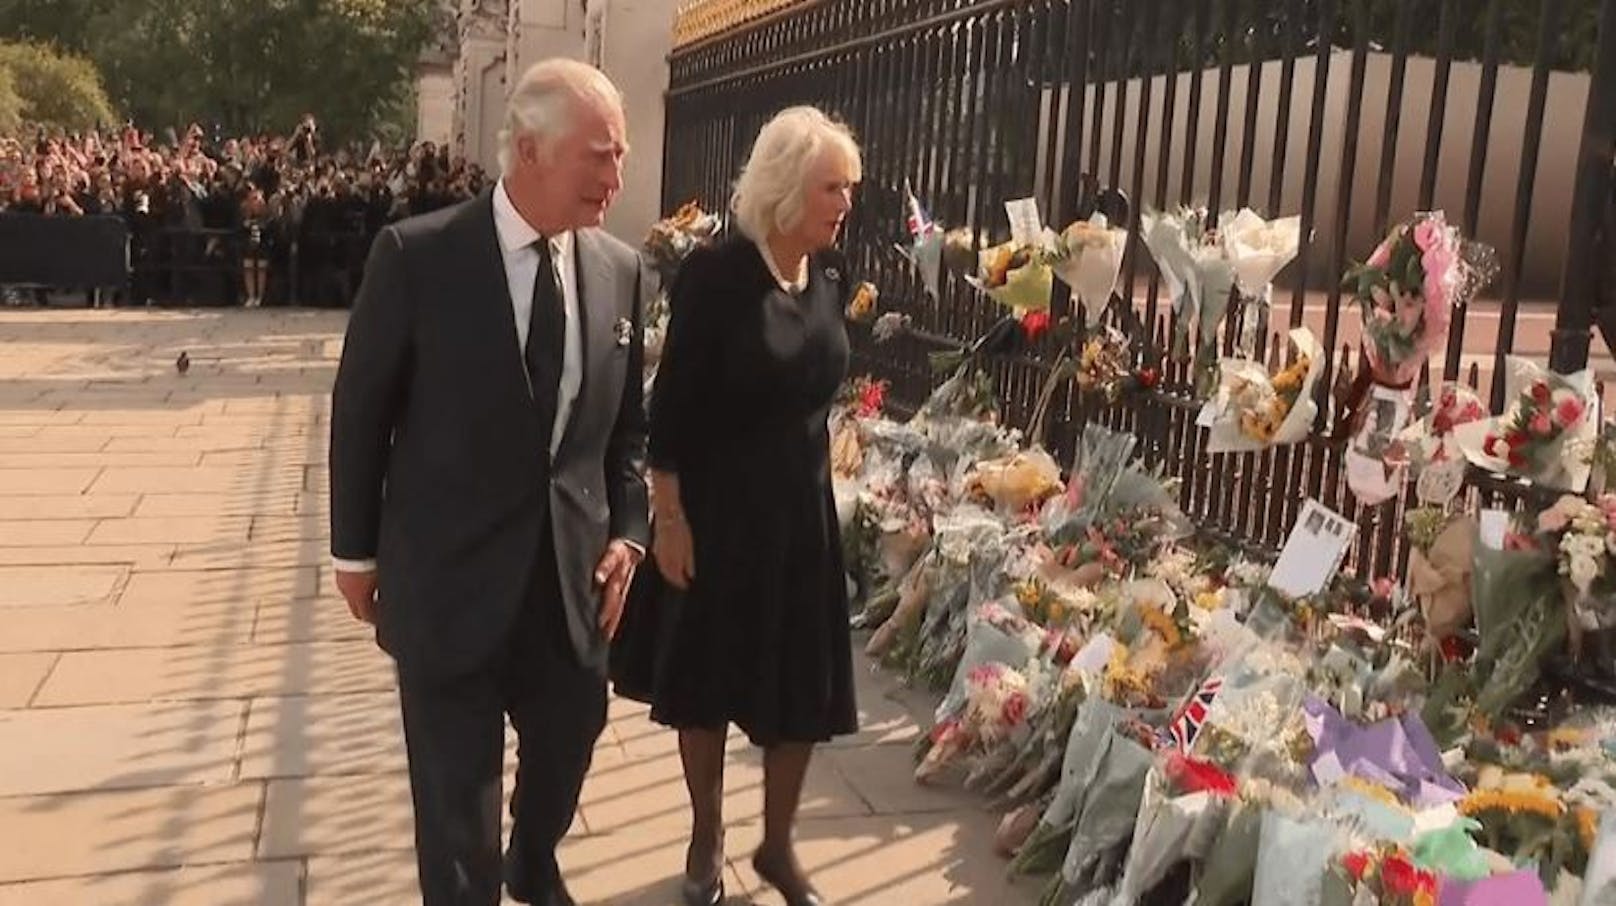 König Charles und Camilla schreiten gemeinsam den Zaun des Buckingham-Palastes entlang, wo unzählige Blumensträuße niedergelegt wurden.